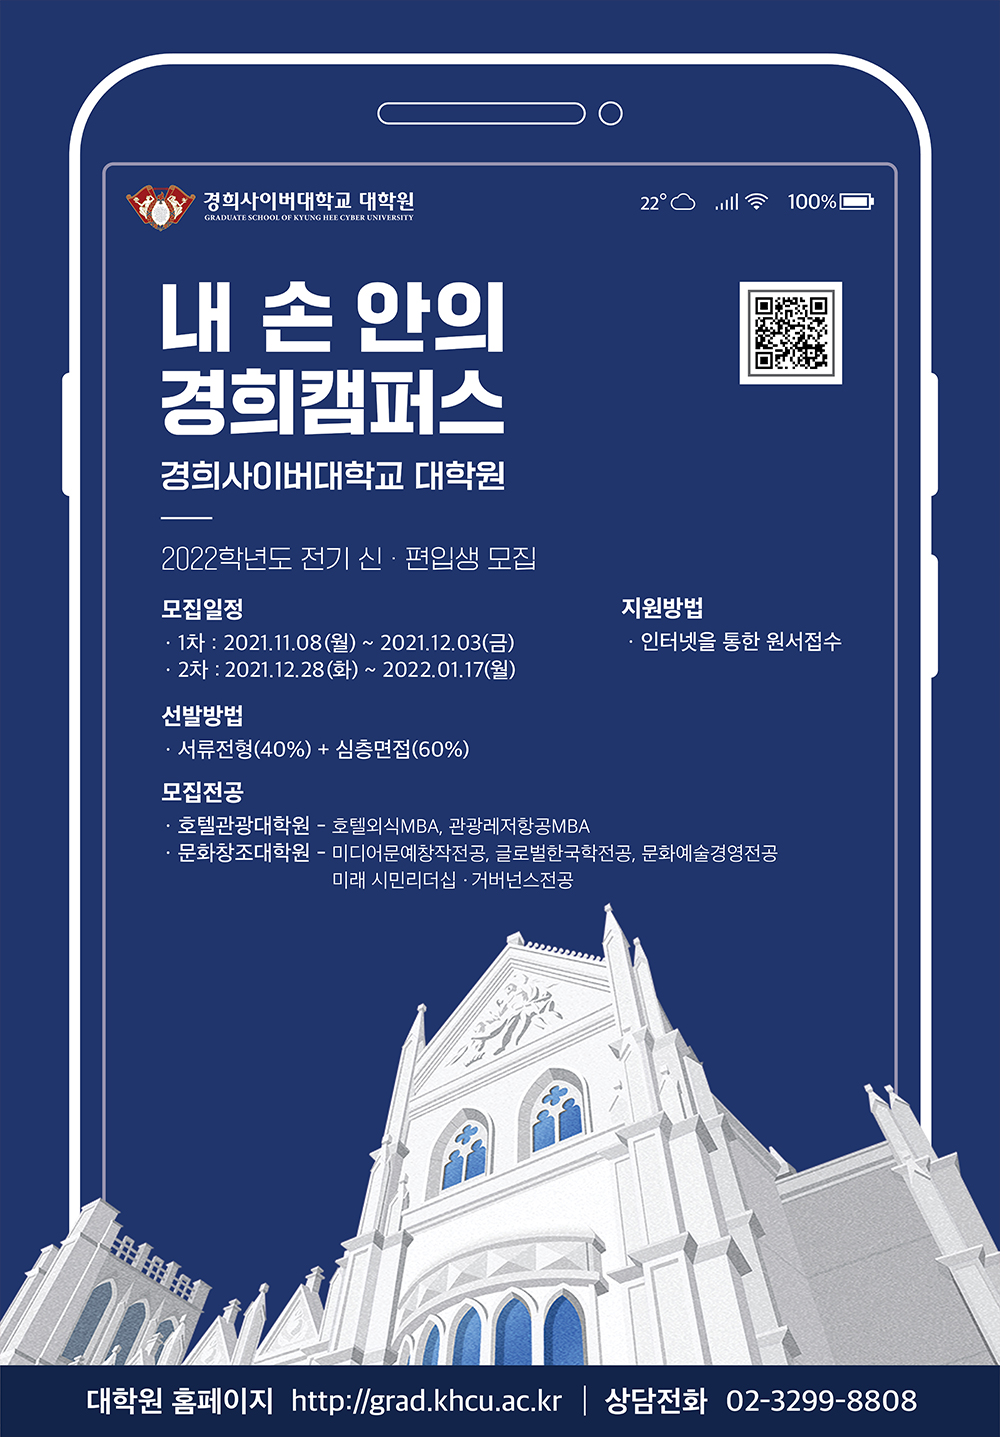 2022-1학기 대학원 학생모집 광고